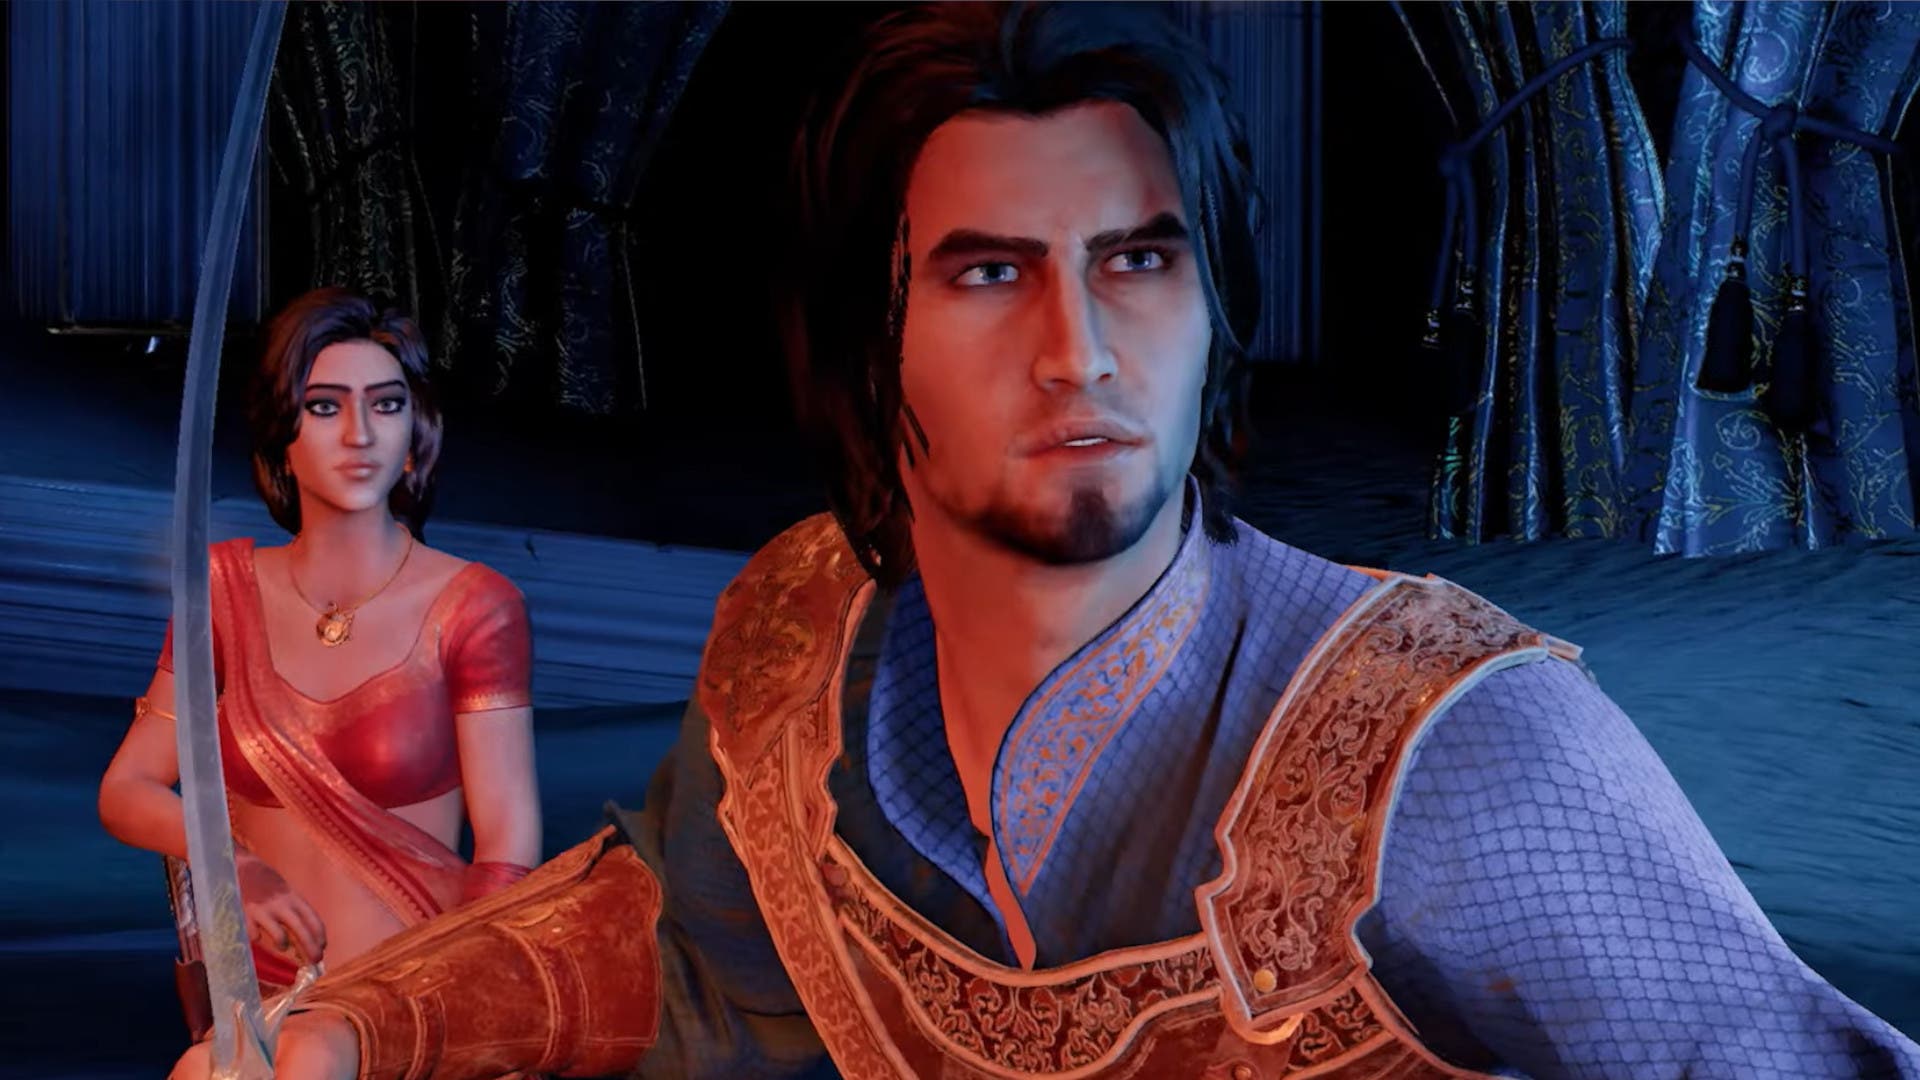 Filtran posible remake de Prince of Persia para PS4 y Switch